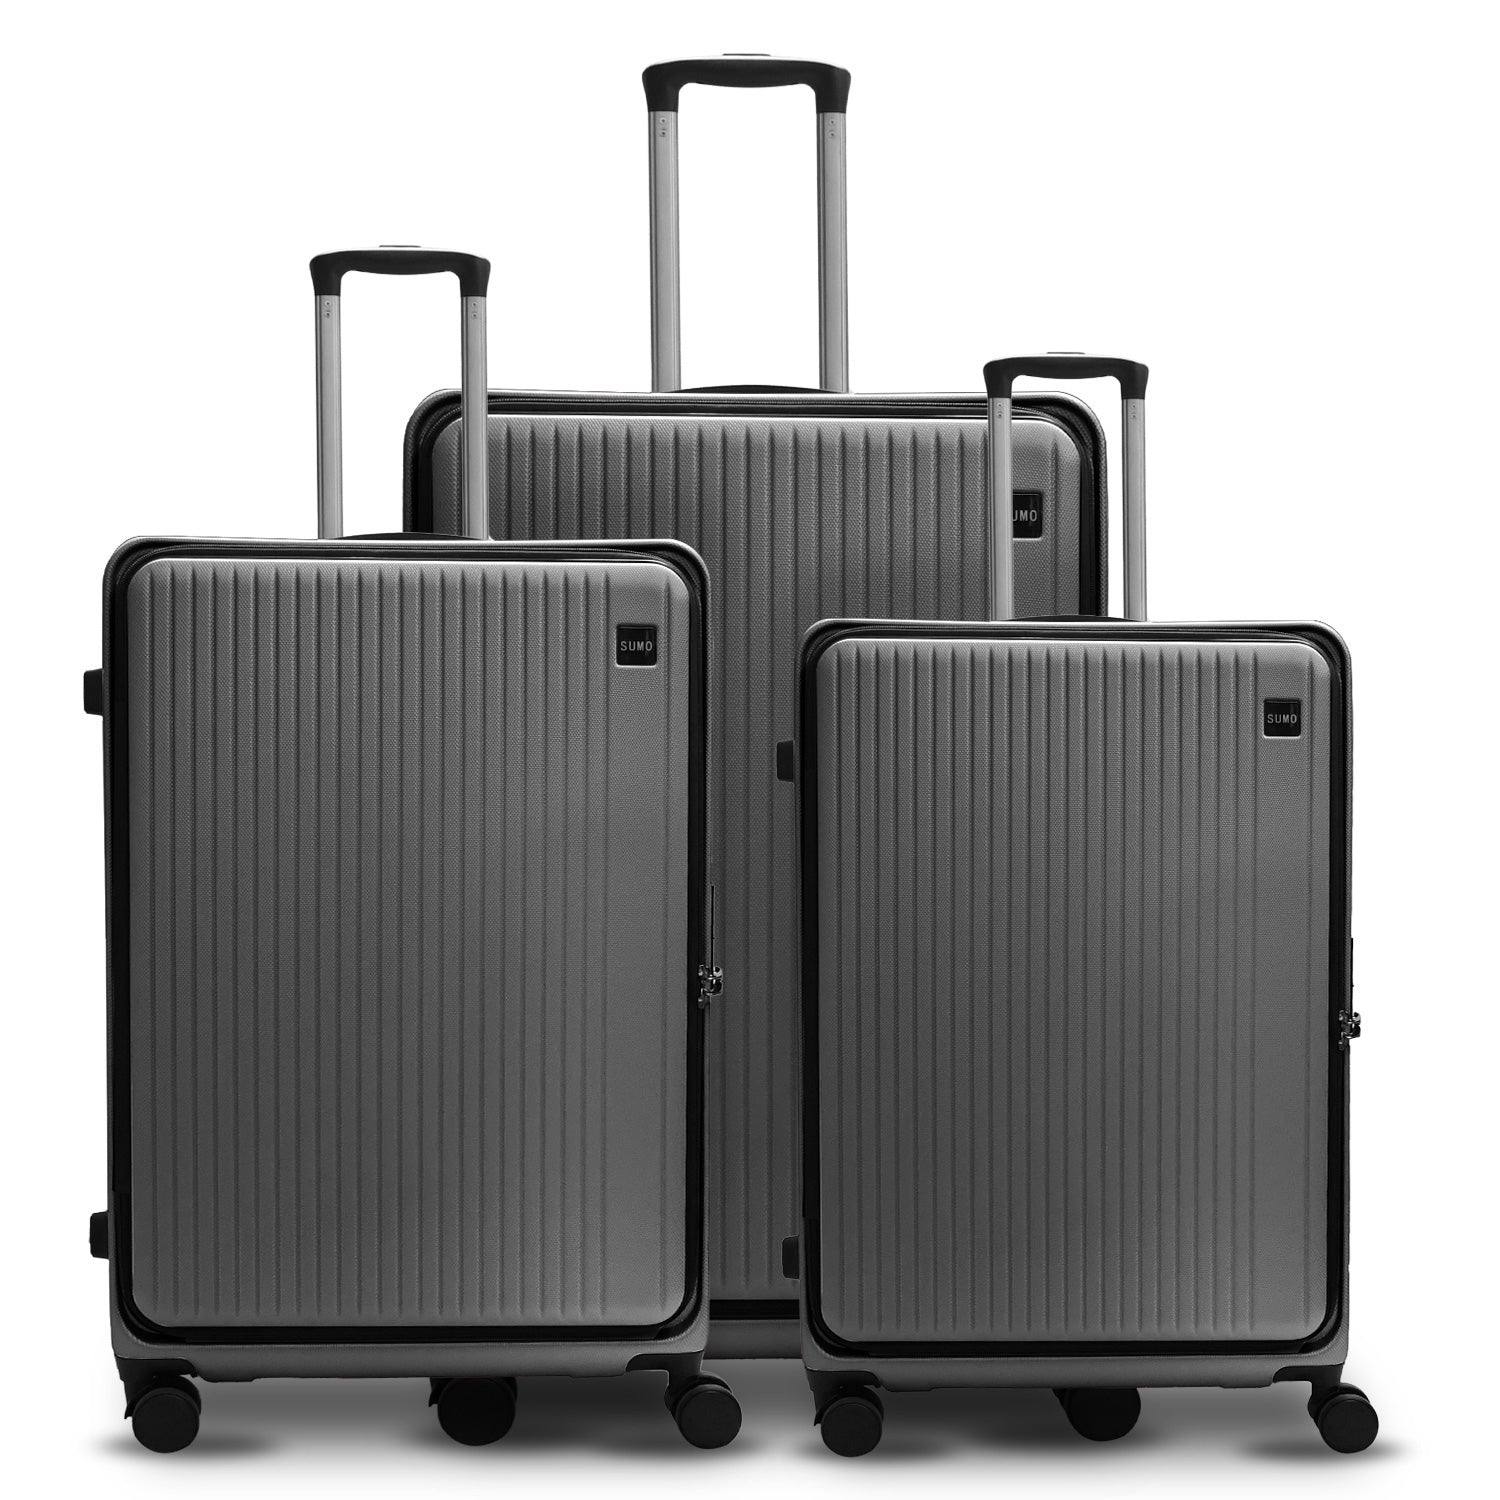 PrestigeGlide Sumo Deluxe Expandable Luggage Trio (20/24/28")